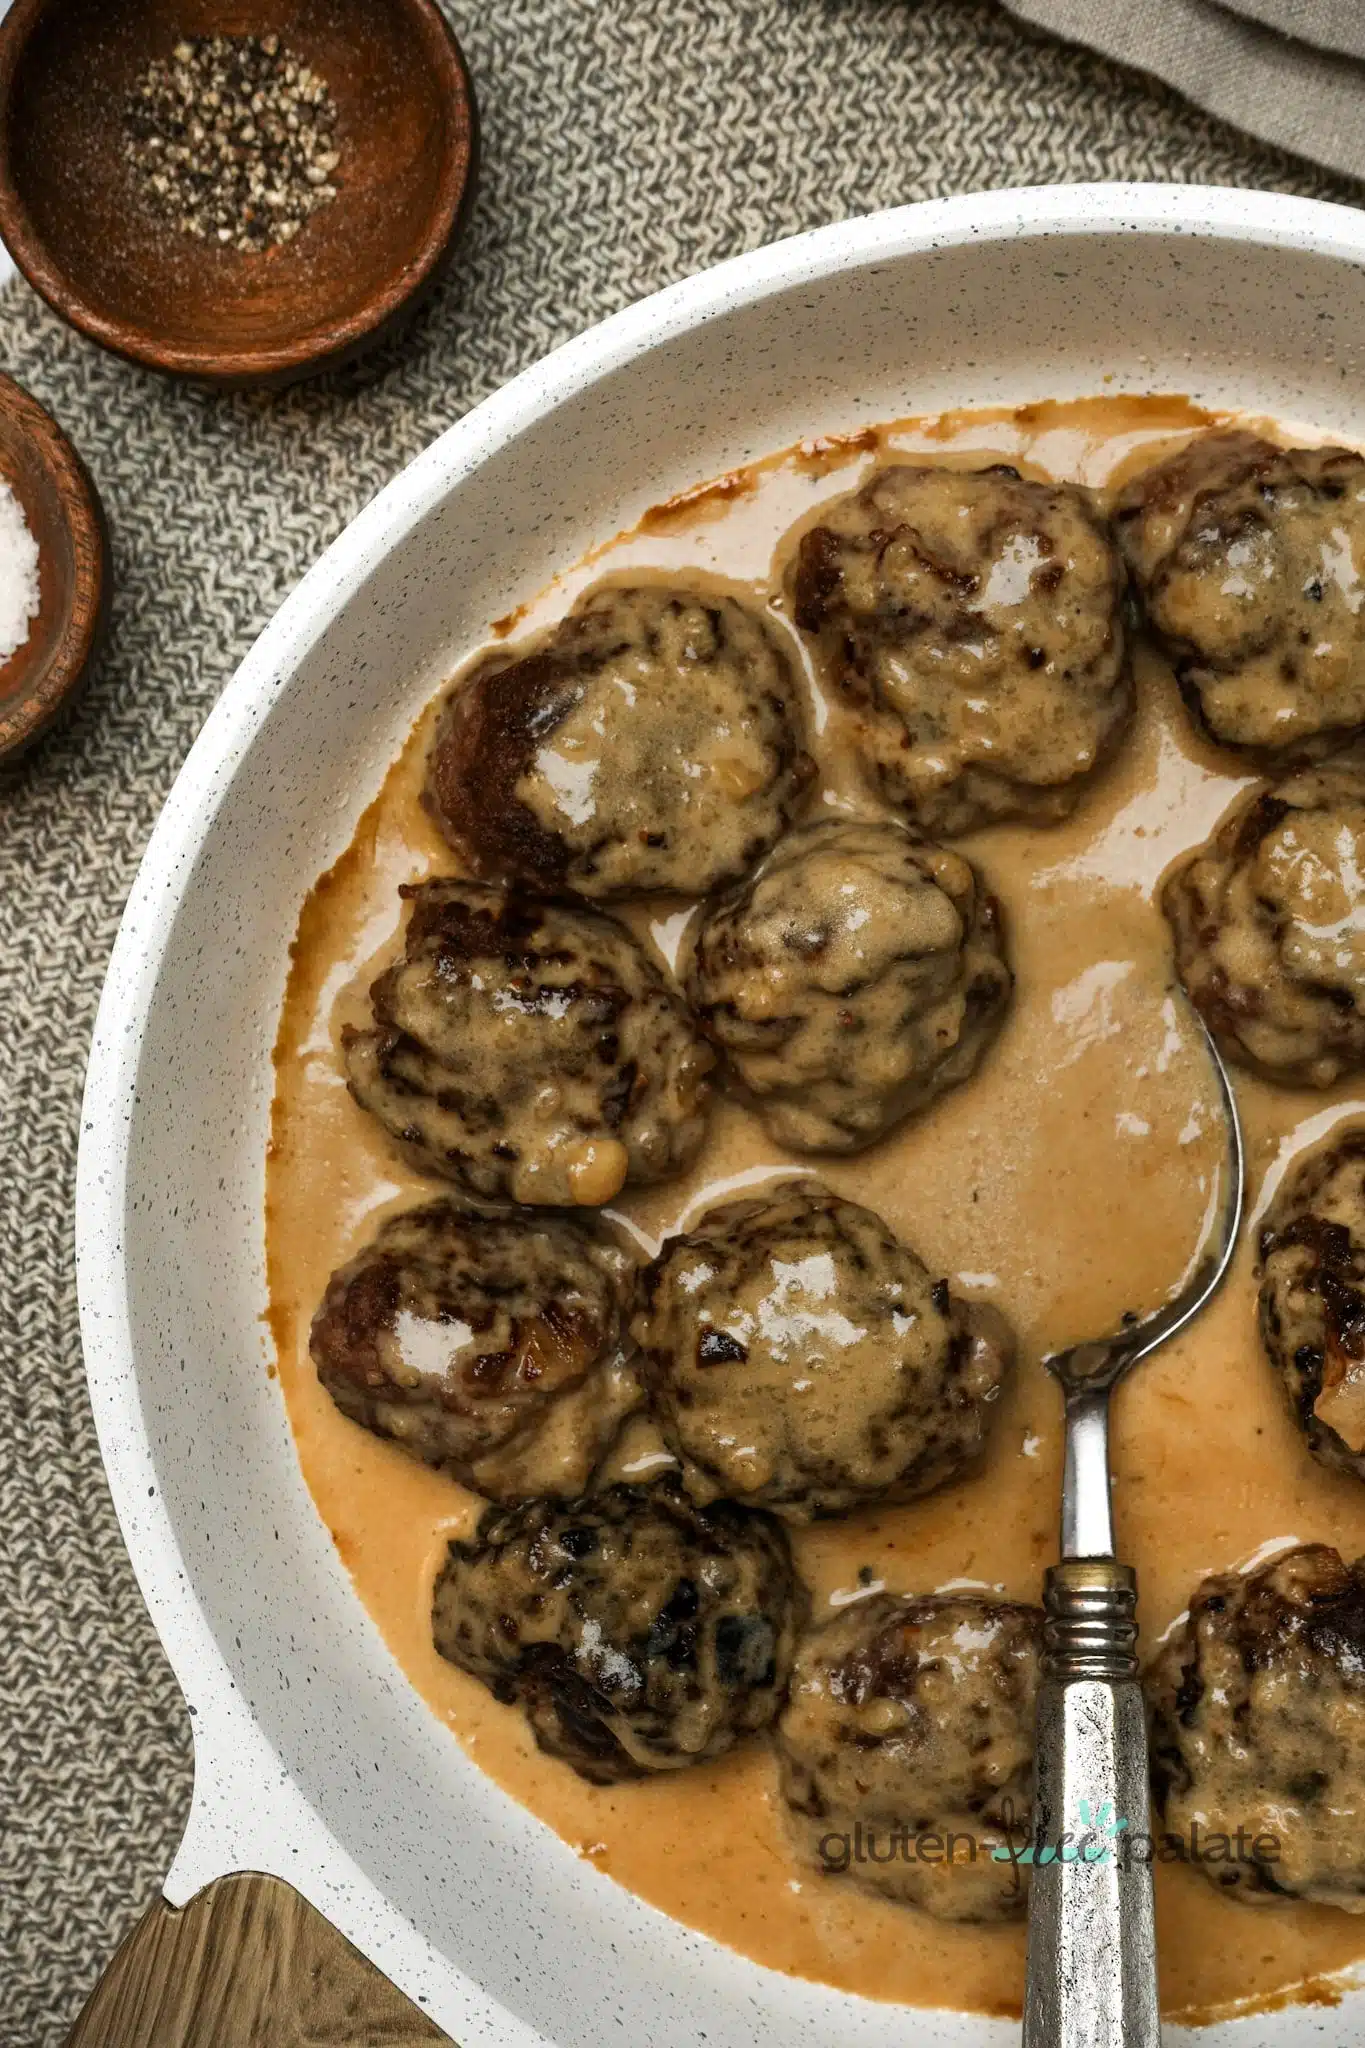 Gluten-free Swedish Meatballs - Texanerin Baking